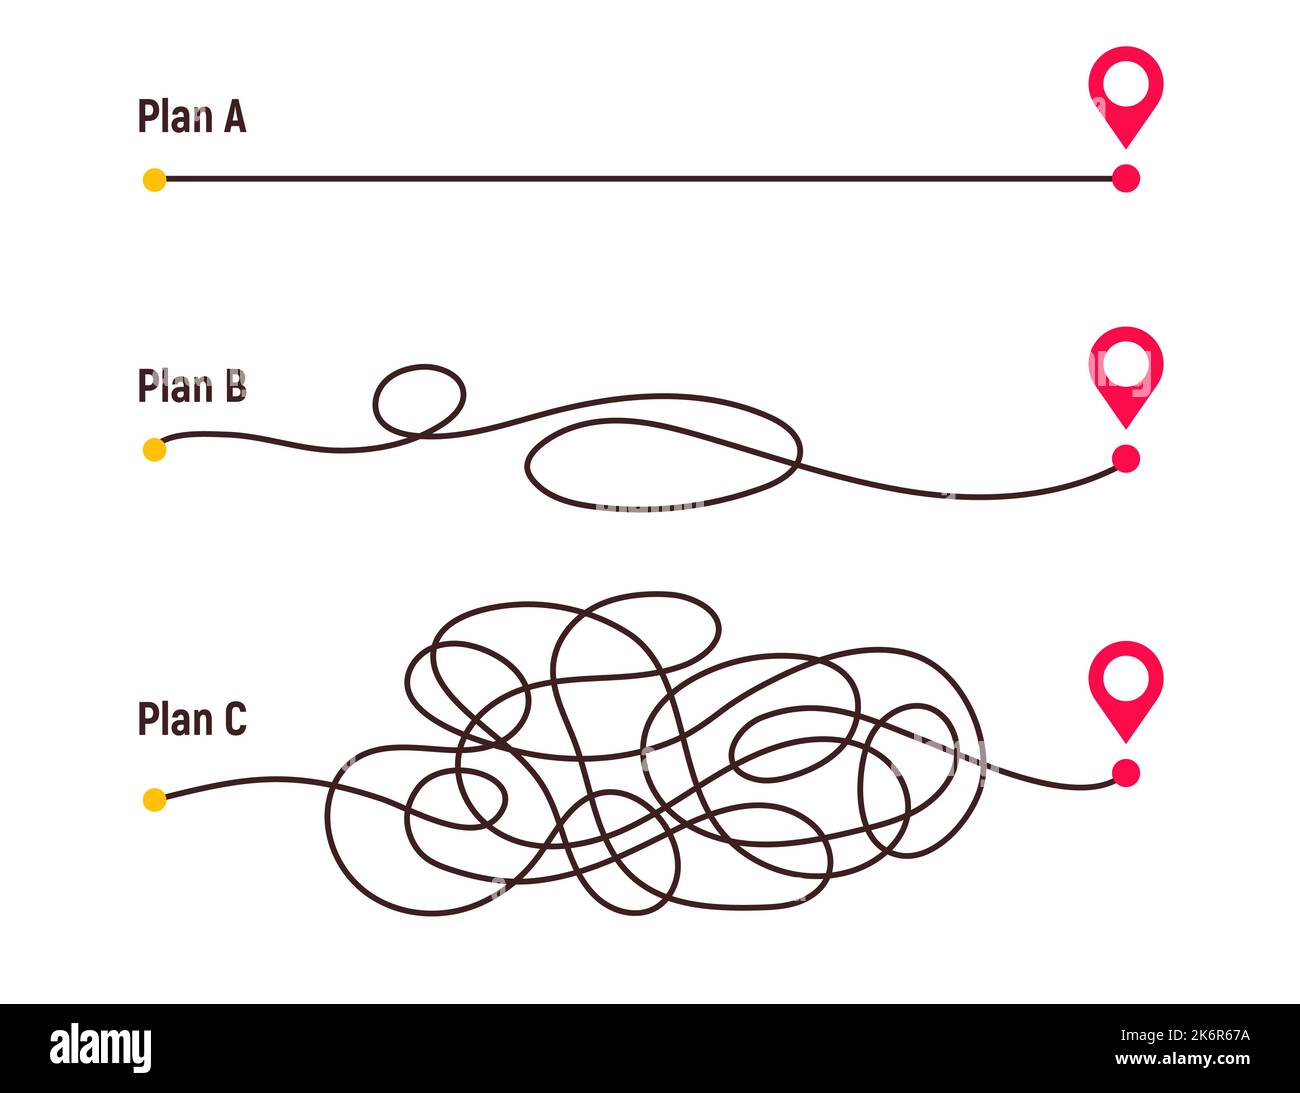 Komplizierter Weg und einfacher Weg von A nach B. Pläne und Chaos im echten Leben vereinfachen. Geschwungene gestrichelte Linie. Vektorgrafik Stock Vektor